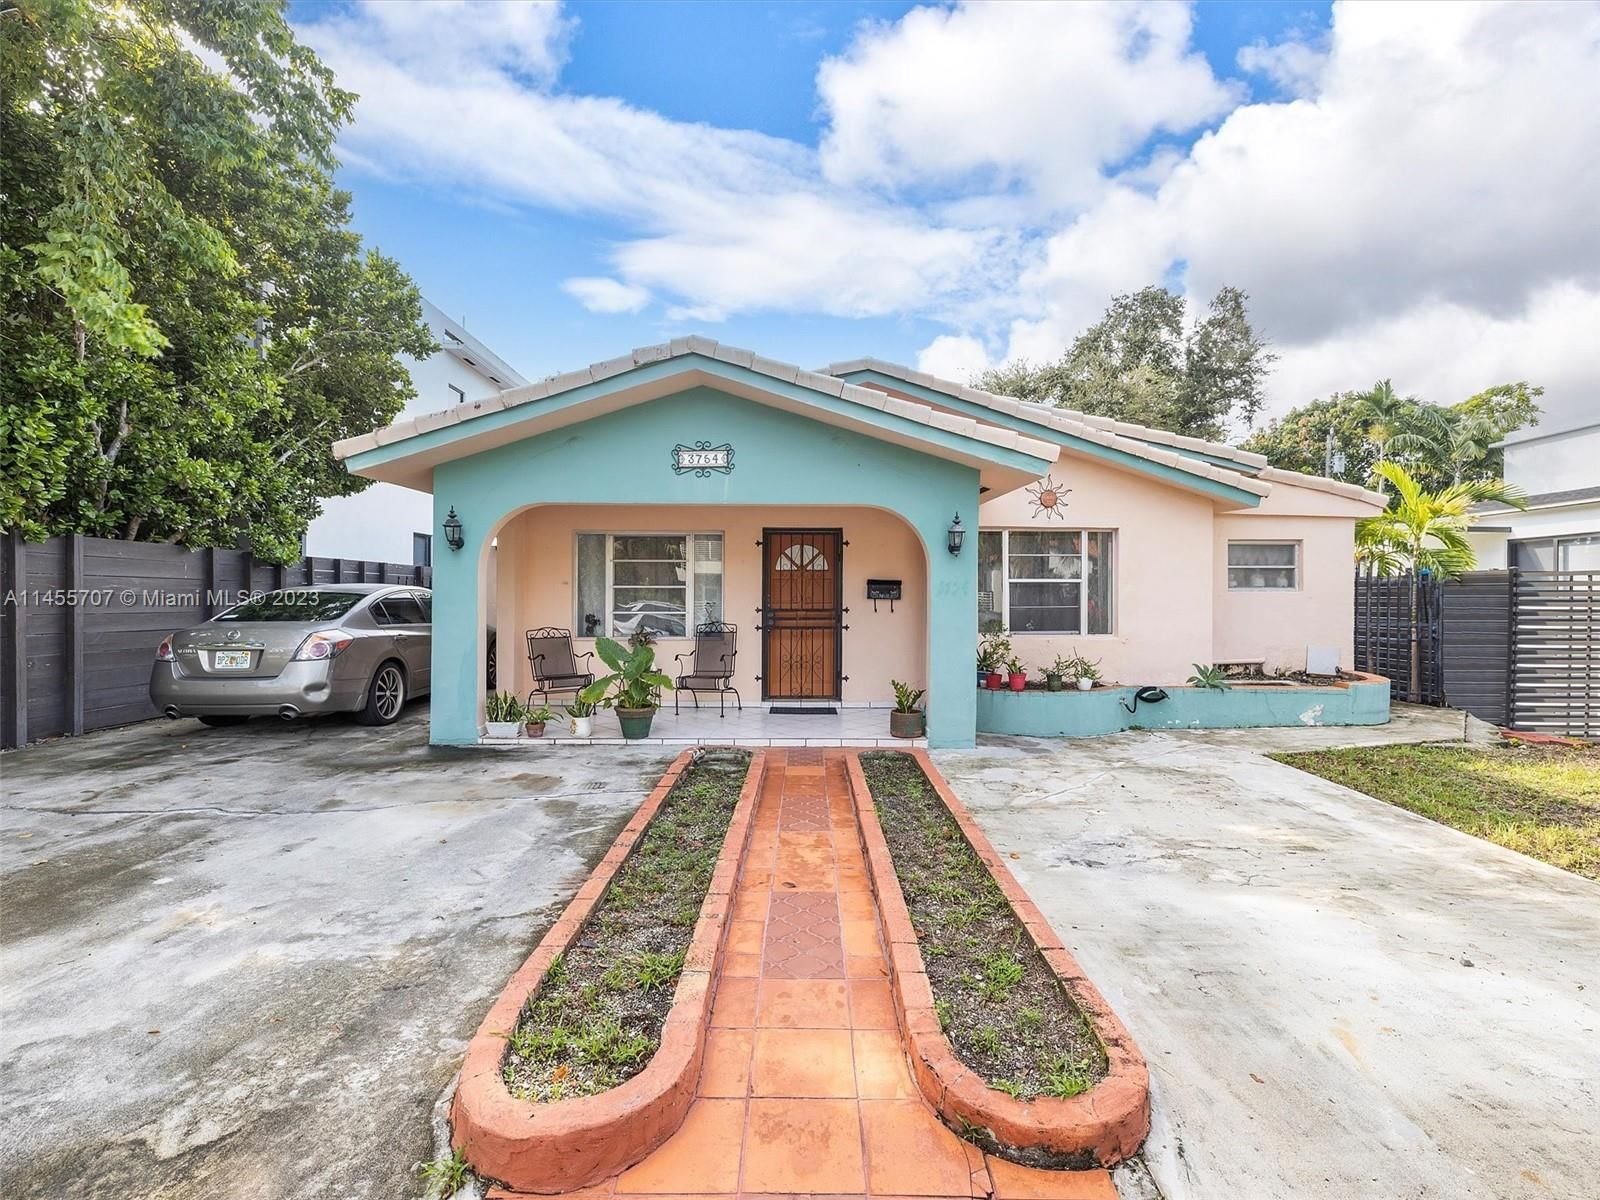 Real estate property located at 3754 27th Ln, Miami-Dade County, Miami, FL